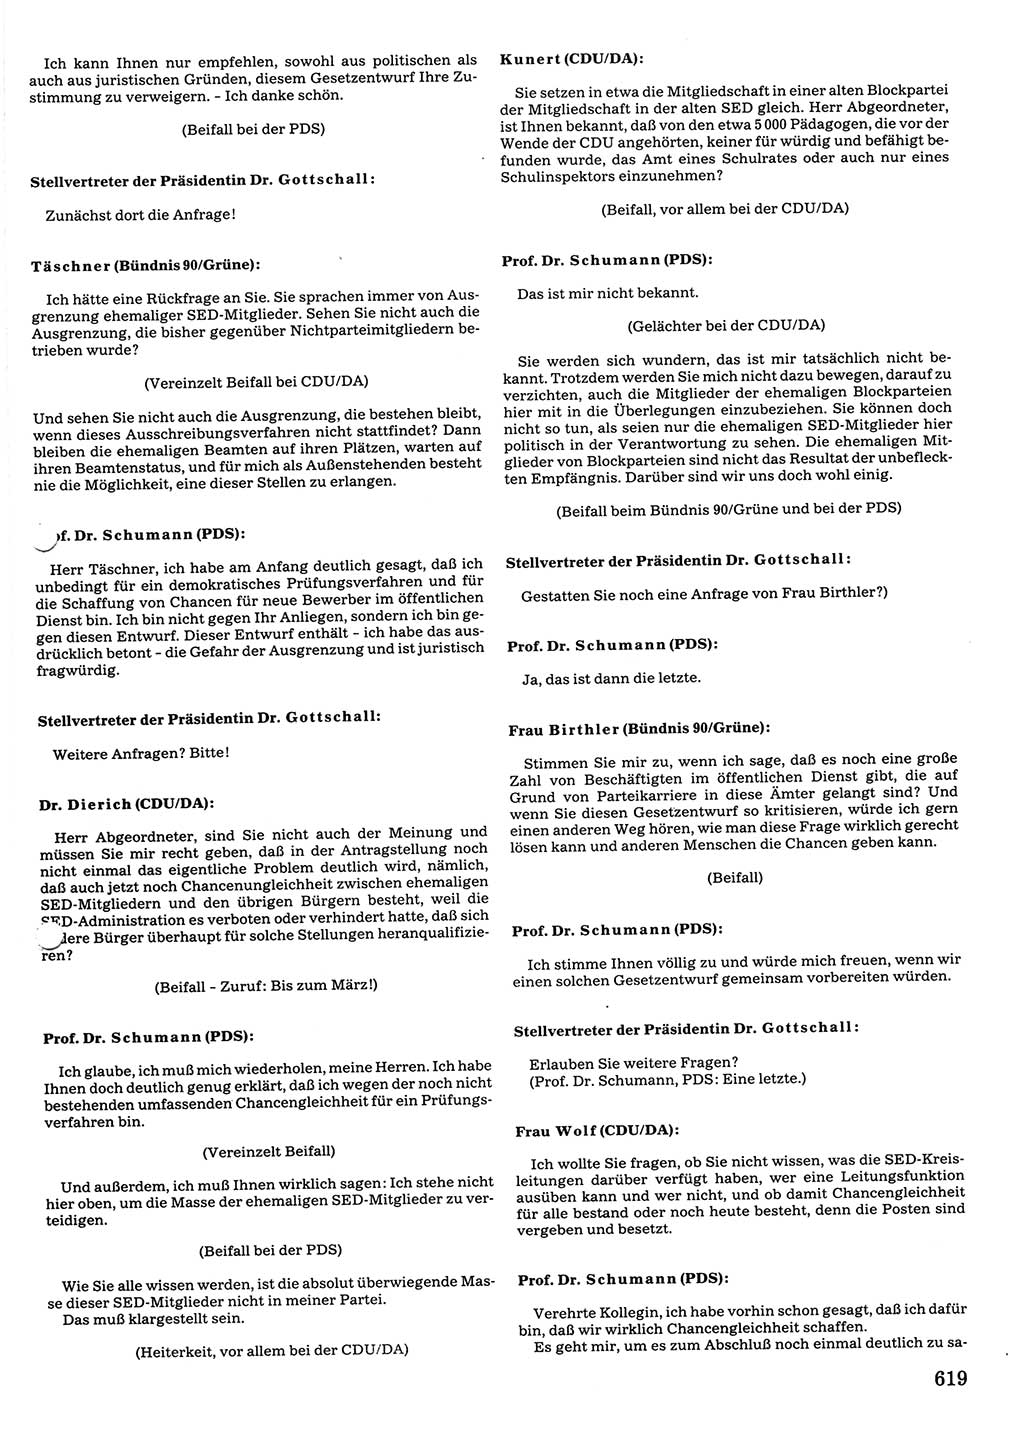 Tagungen der Volkskammer (VK) der Deutschen Demokratischen Republik (DDR), 10. Wahlperiode 1990, Seite 619 (VK. DDR 10. WP. 1990, Prot. Tg. 1-38, 5.4.-2.10.1990, S. 619)